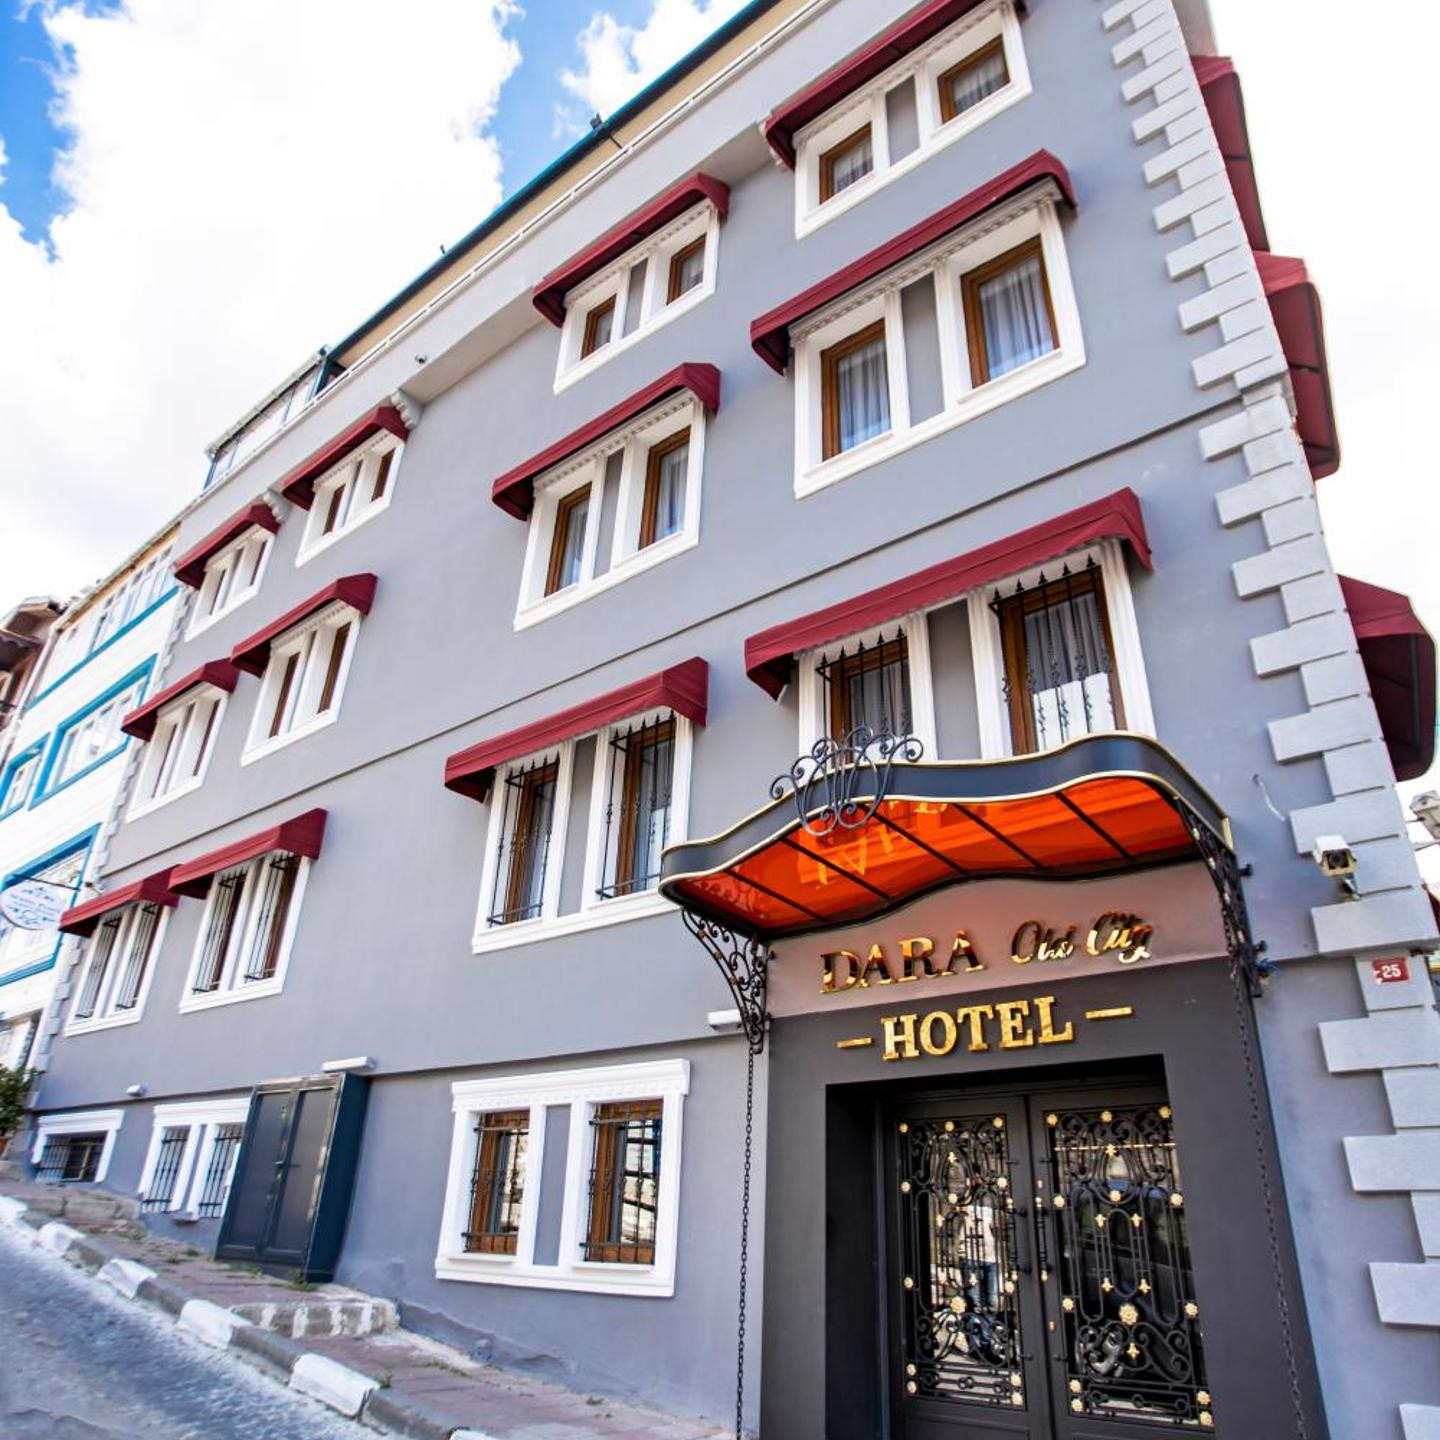 Dara Old City Hotel